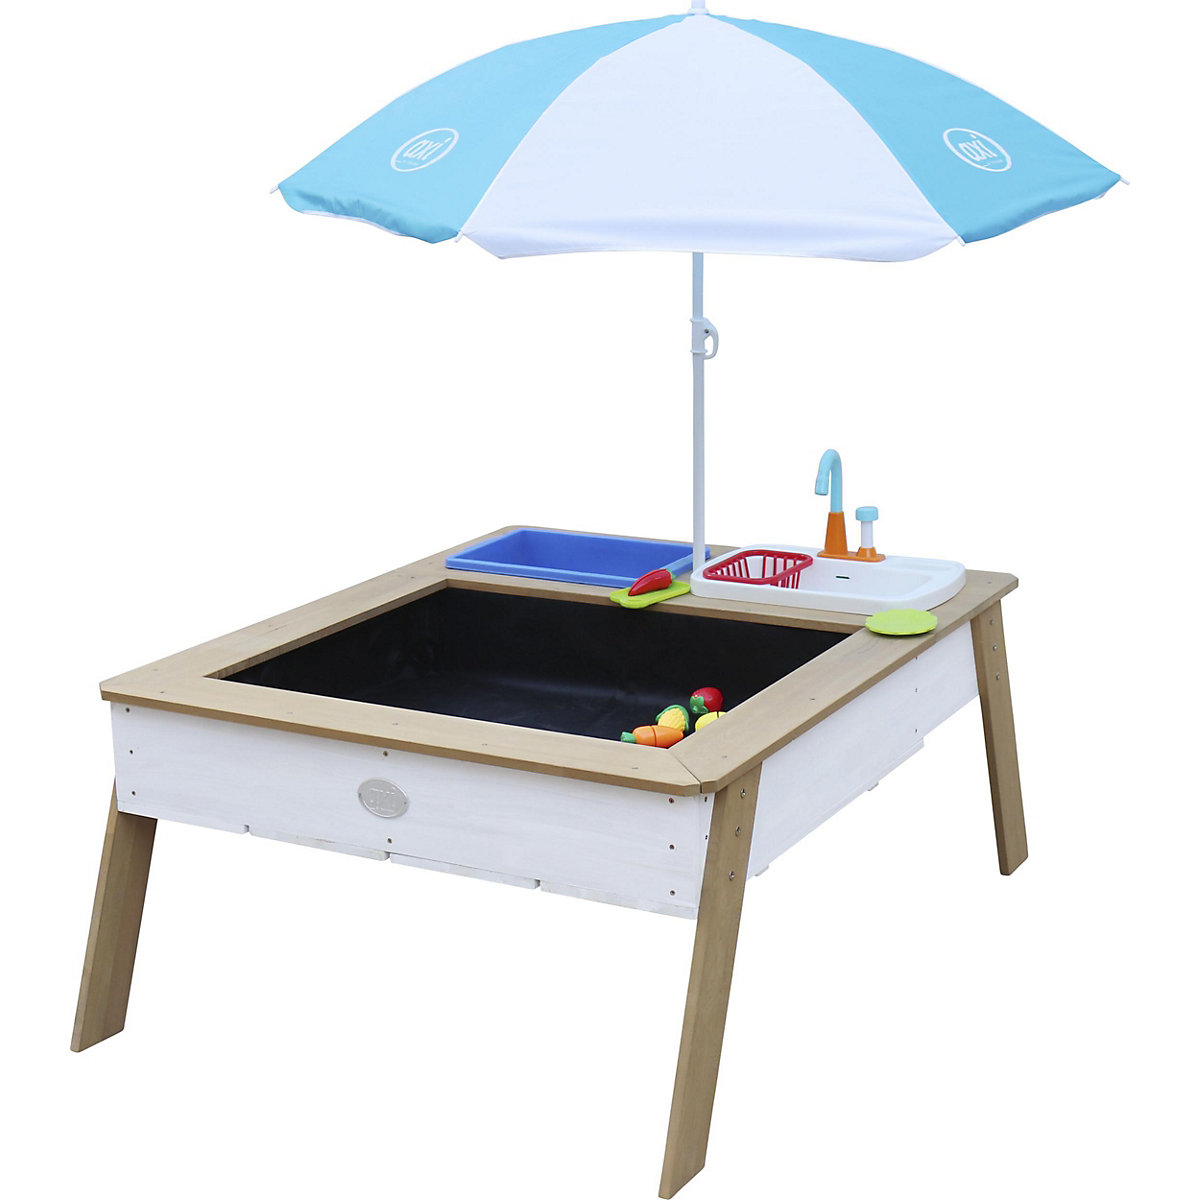 Axi Linda Sand- und Wassertisch mit Spülbecken Braun/Weiß Regenschirm Blau/Weiß